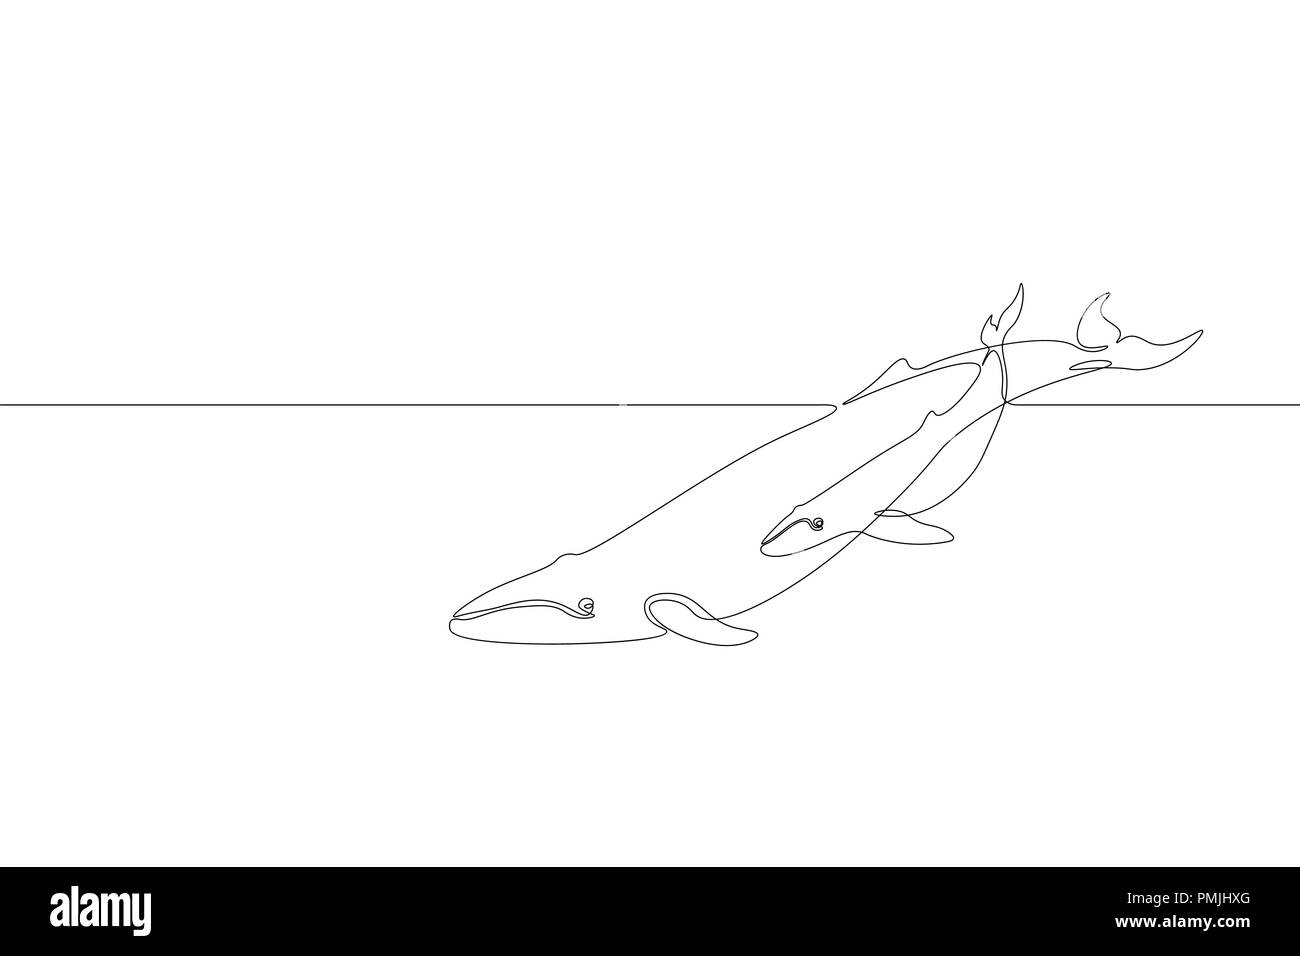 Singola linea continua art marine whale genitore baby silhouette. Natura oceano ecologia ambiente di vita concetto. Grande racconto sea wave madre design animale uno schizzo schizzo illustrazione vettoriale Illustrazione Vettoriale